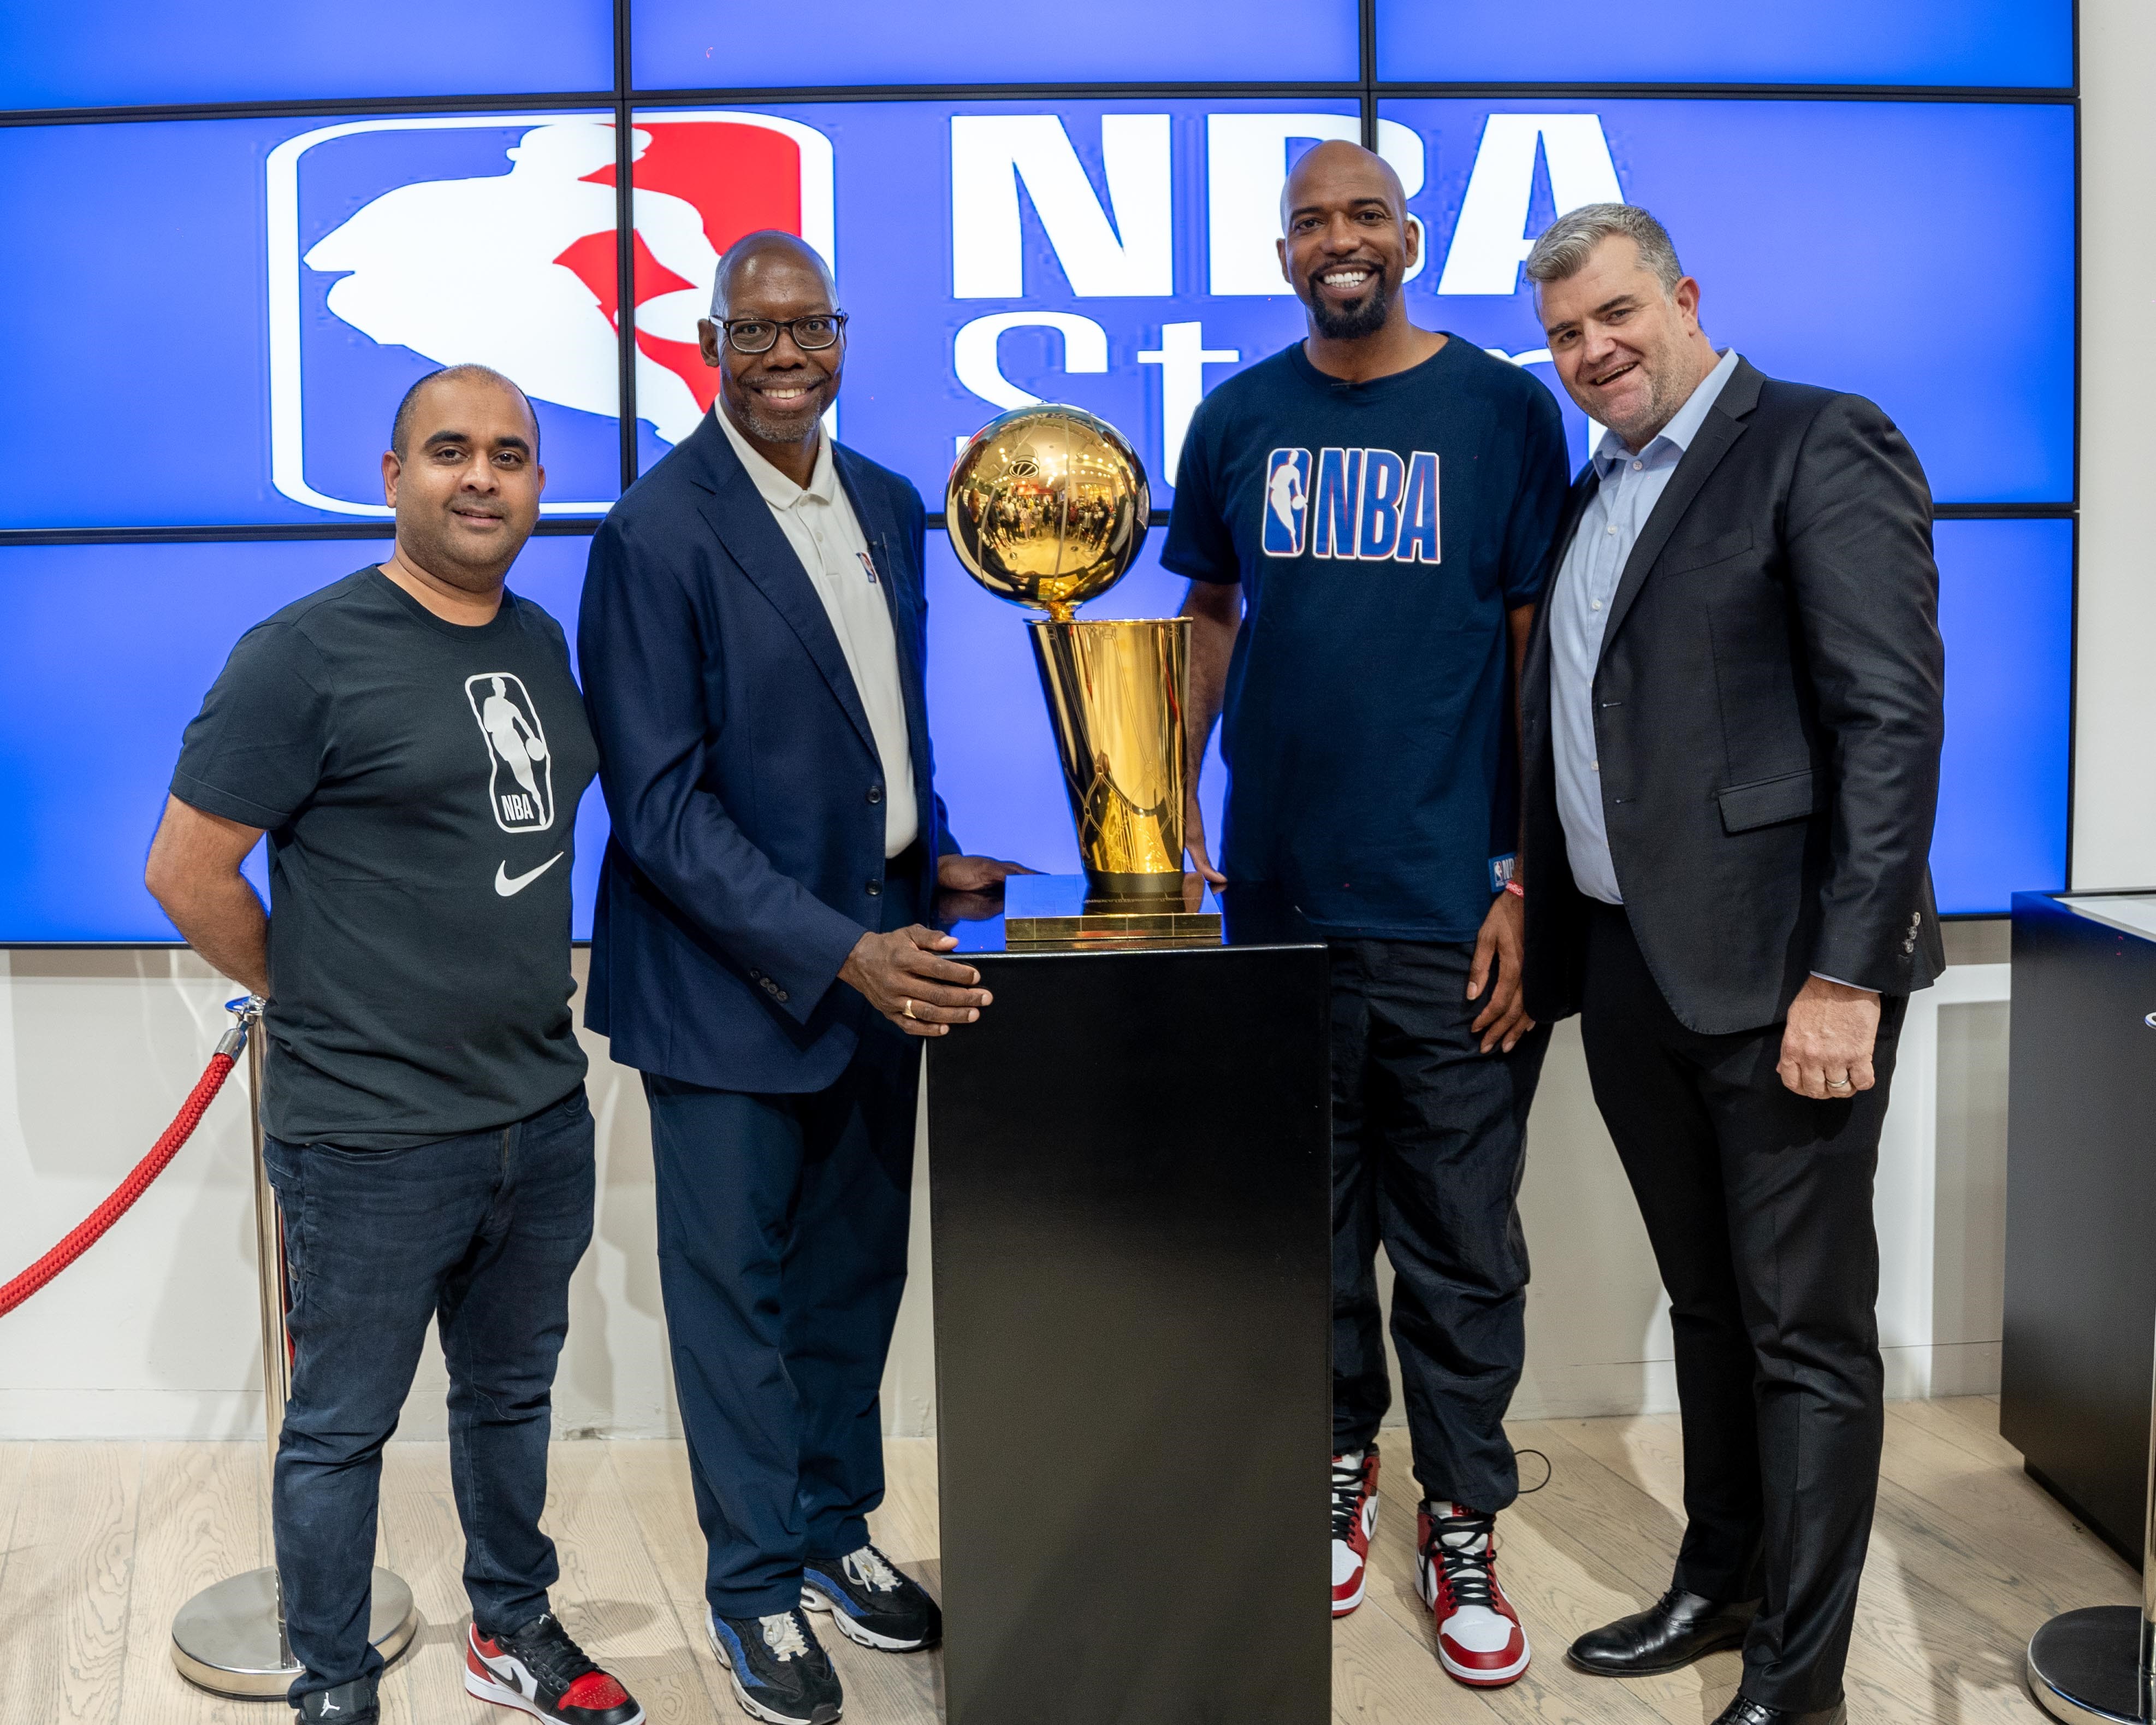 NBA Africa et Shesha Inaugurent le Premier Magasin Physique de la Ligue sur le Continent Africain